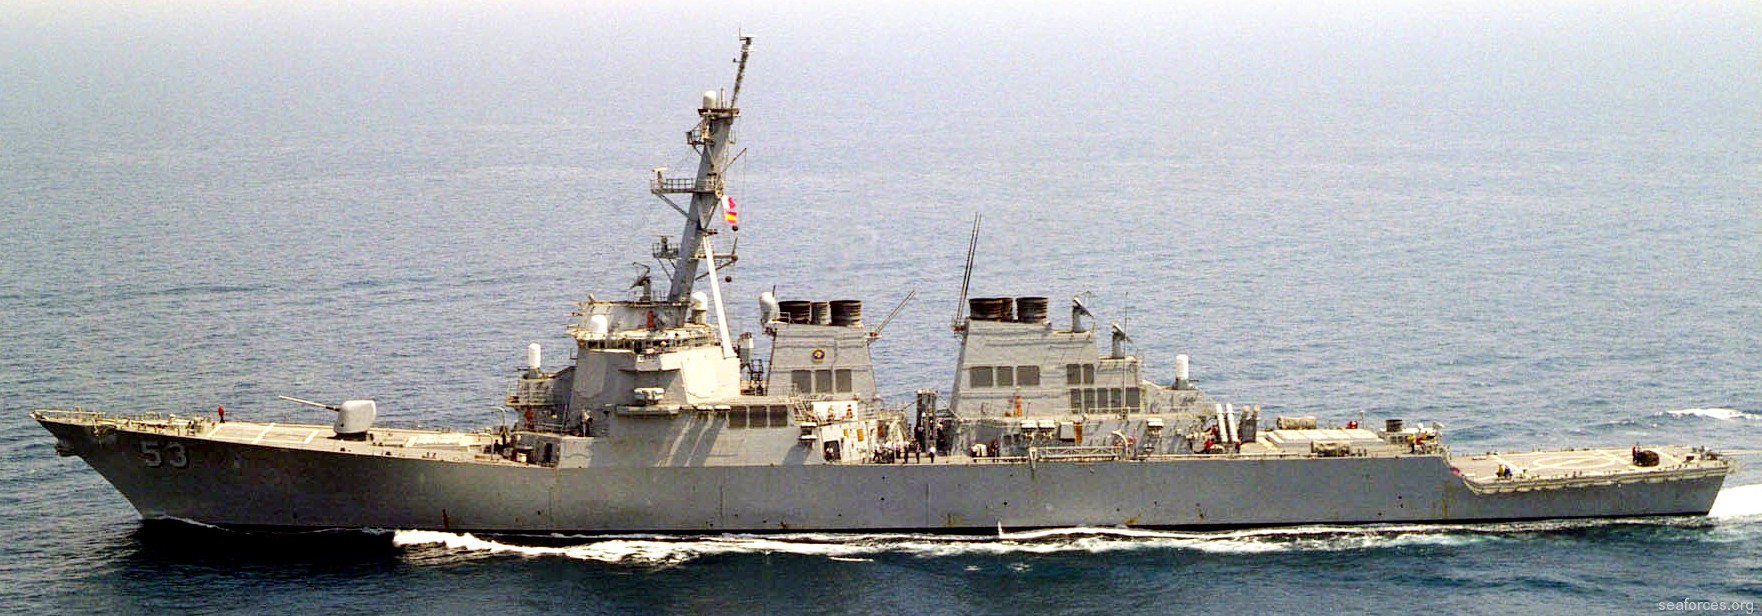 ddg-53 uss john paul jones destroyer us navy 36 arabian gulf